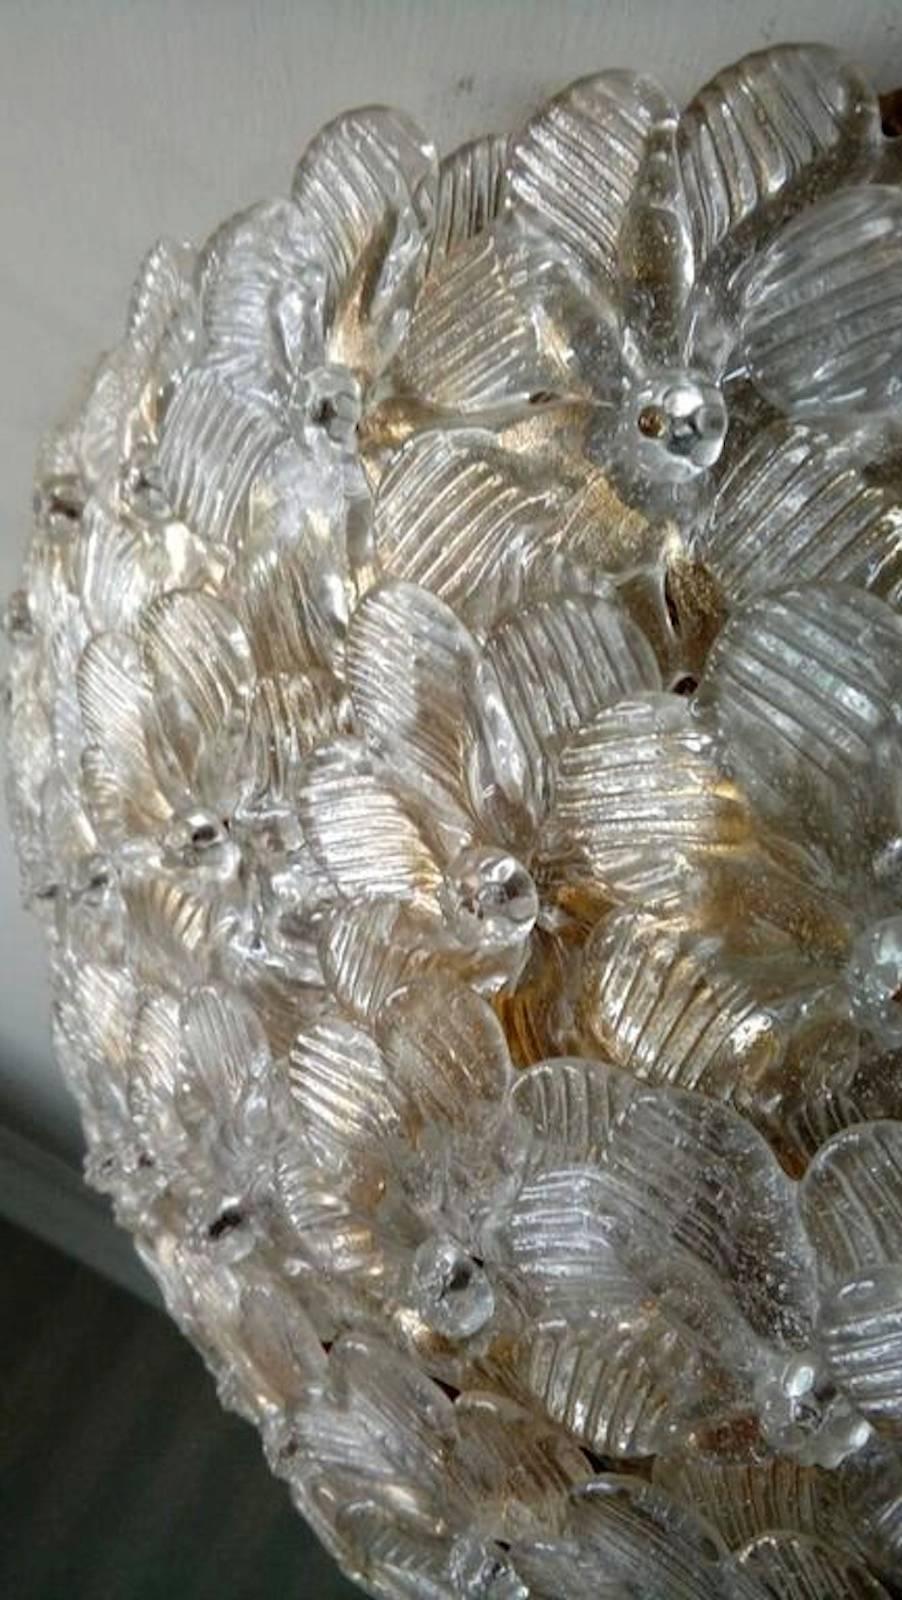 Plafond à panier de fleurs en verre vénitien Barovier & Toso.
Le plafonnier est composé de dizaines de petites roses en verre précieux de Murano avec des inclusions d'or. Mesures :
Mesures : Diamètre 42 cm
Hauteur 15 cm.